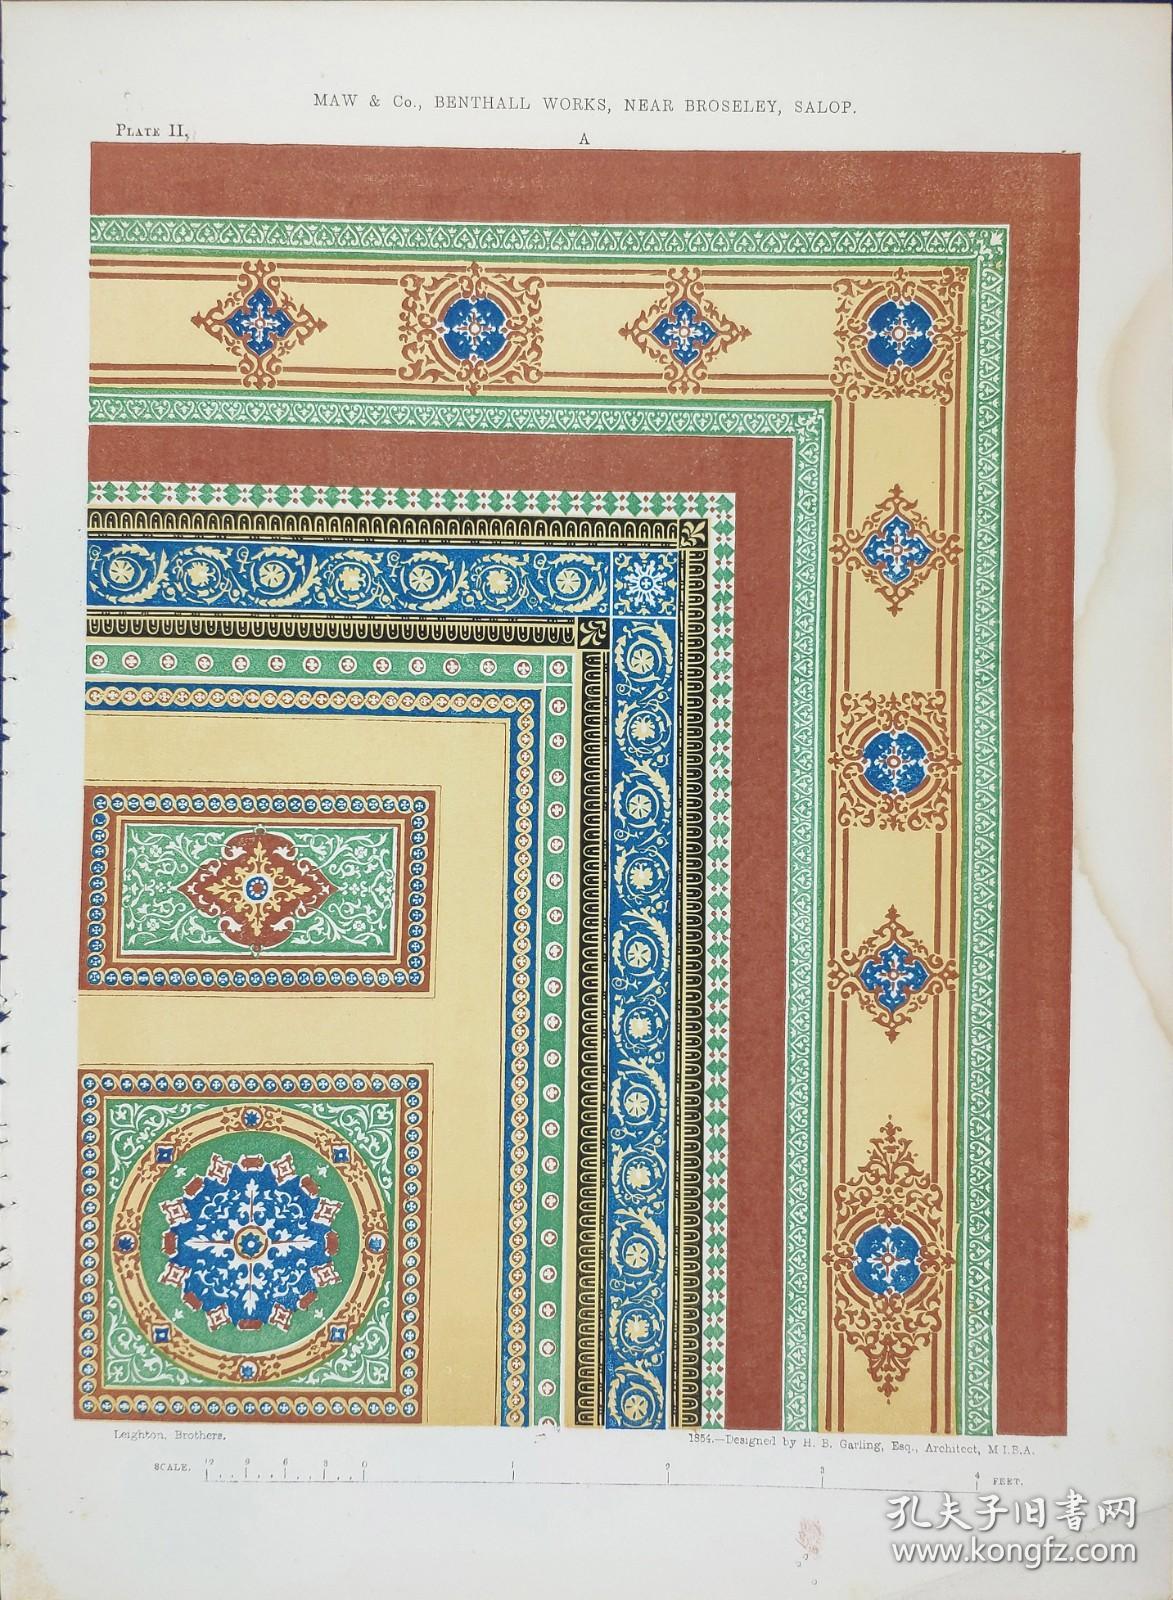 1855年 彩色石版画《版2-釉上彩瓷砖装饰图样》-1855年《艺术日志》收录作品